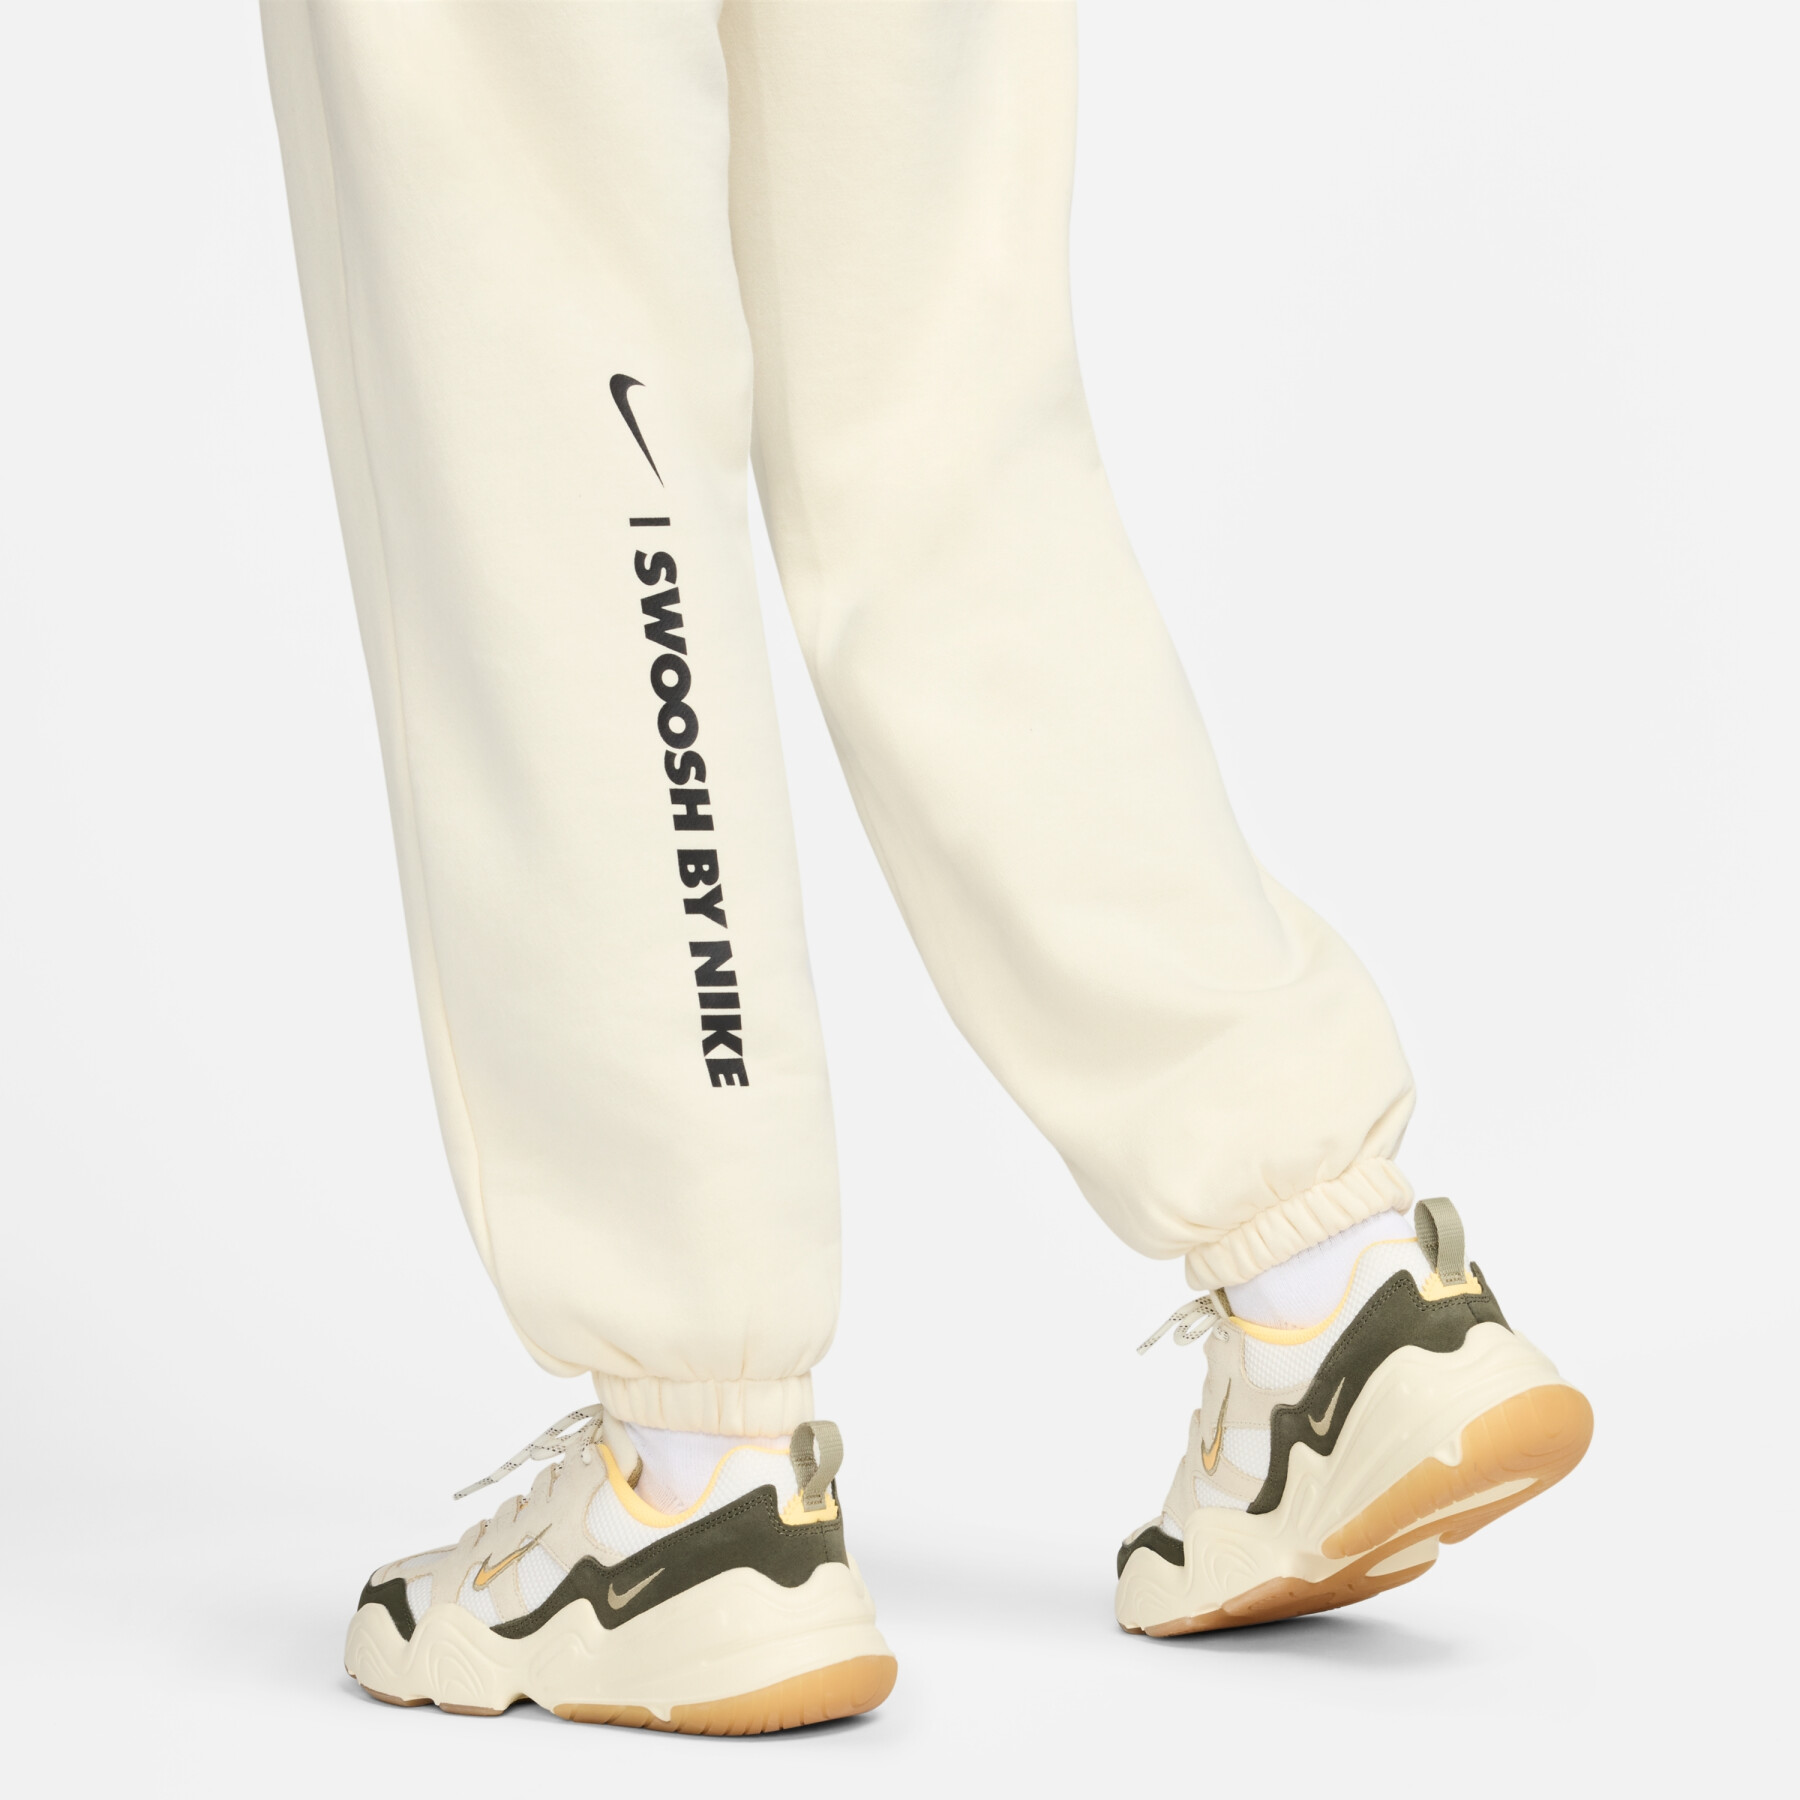 Pantalón de chándal holgado mujer Nike Fleece